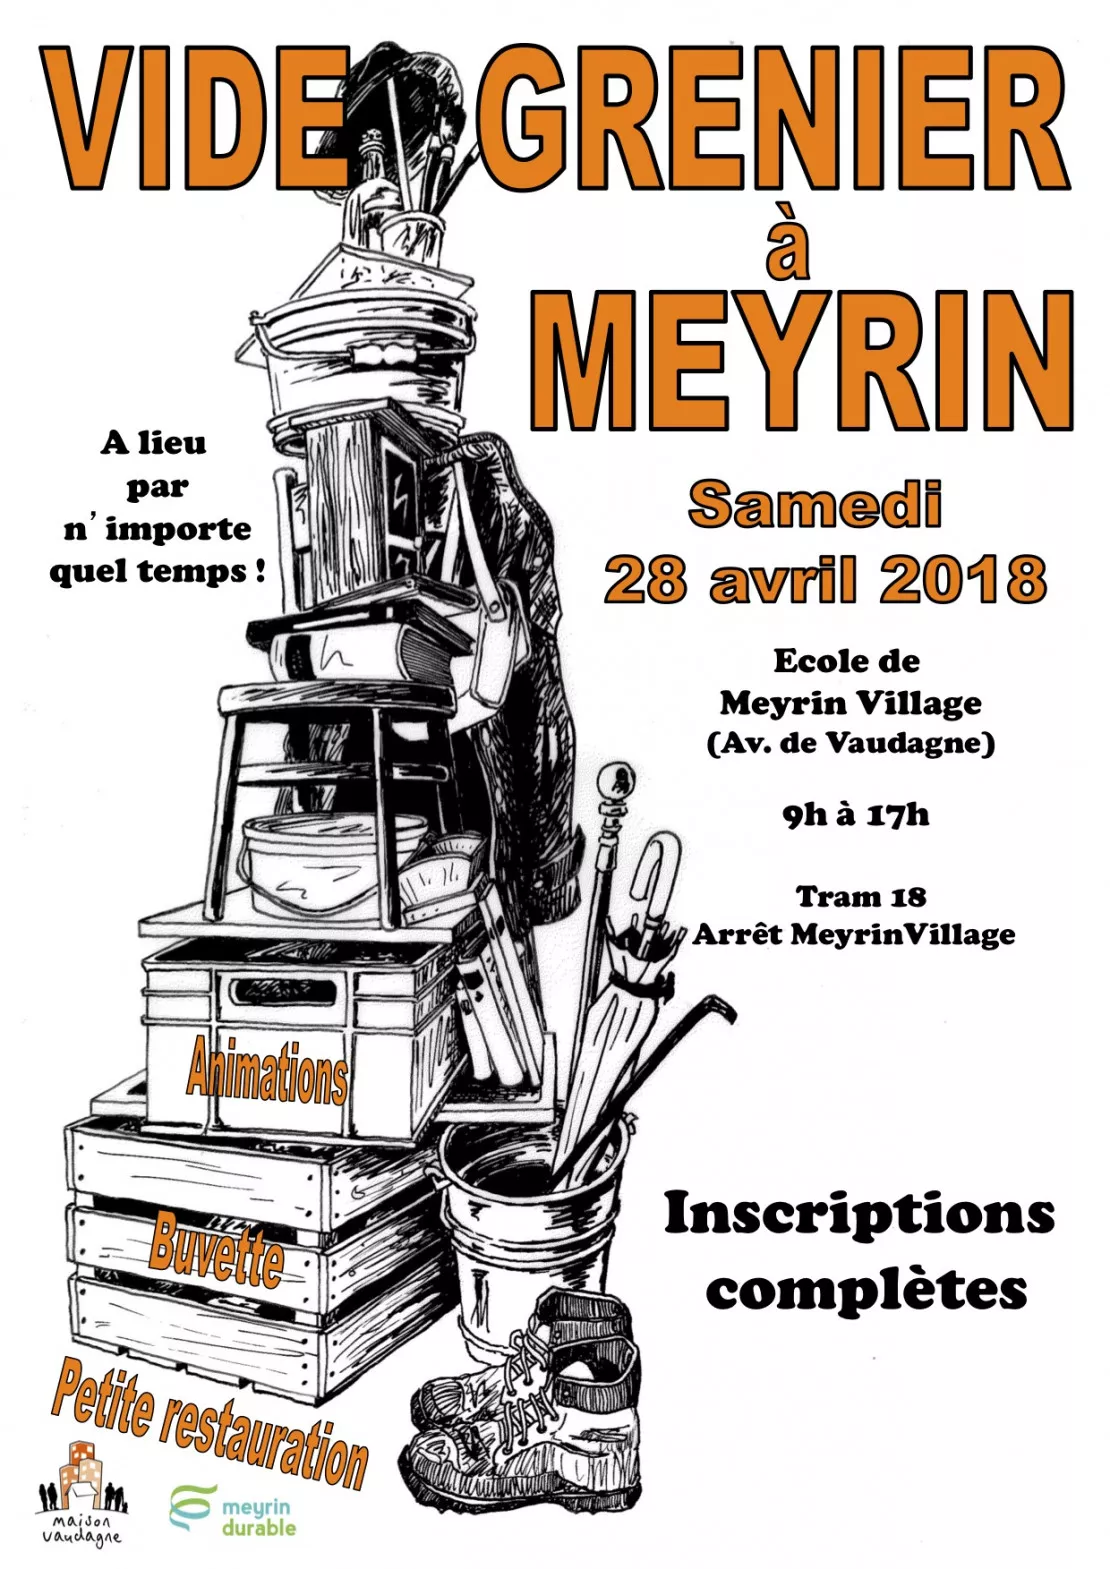 Meyrin (CH) - vide-grenier de Meyrin